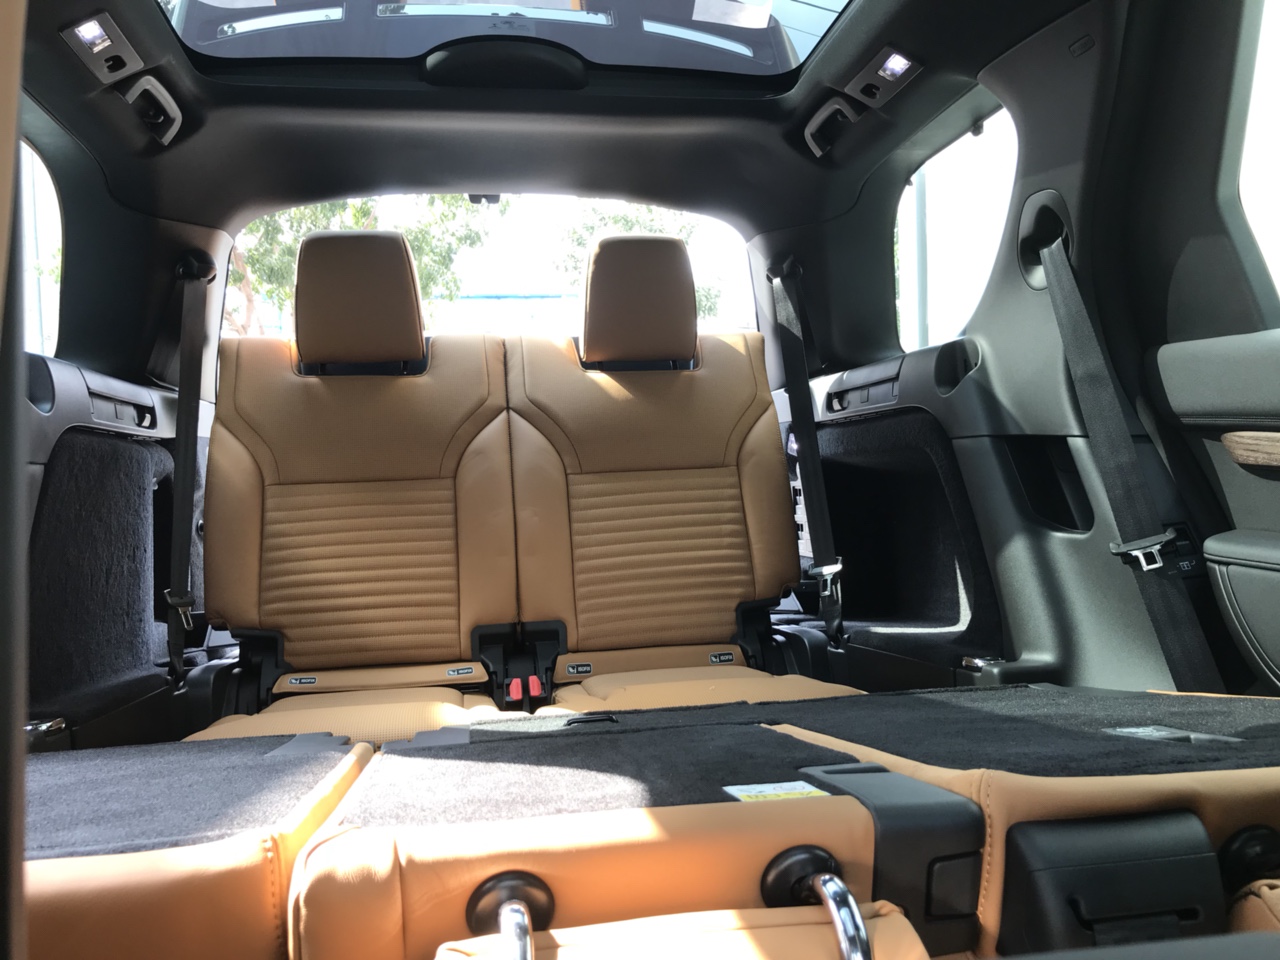 Đánh Giá Xe 7 Chỗ Land Rover Discovery HSE Luxury Cao Cấp Màu Xanh Rêu Aintree Green 2018, Xe Range Rover 7 Chỗ thế hệ mới model 2019 có gì khác model này, xe chạy có hao xăng không, xe nhập từ nước nào.